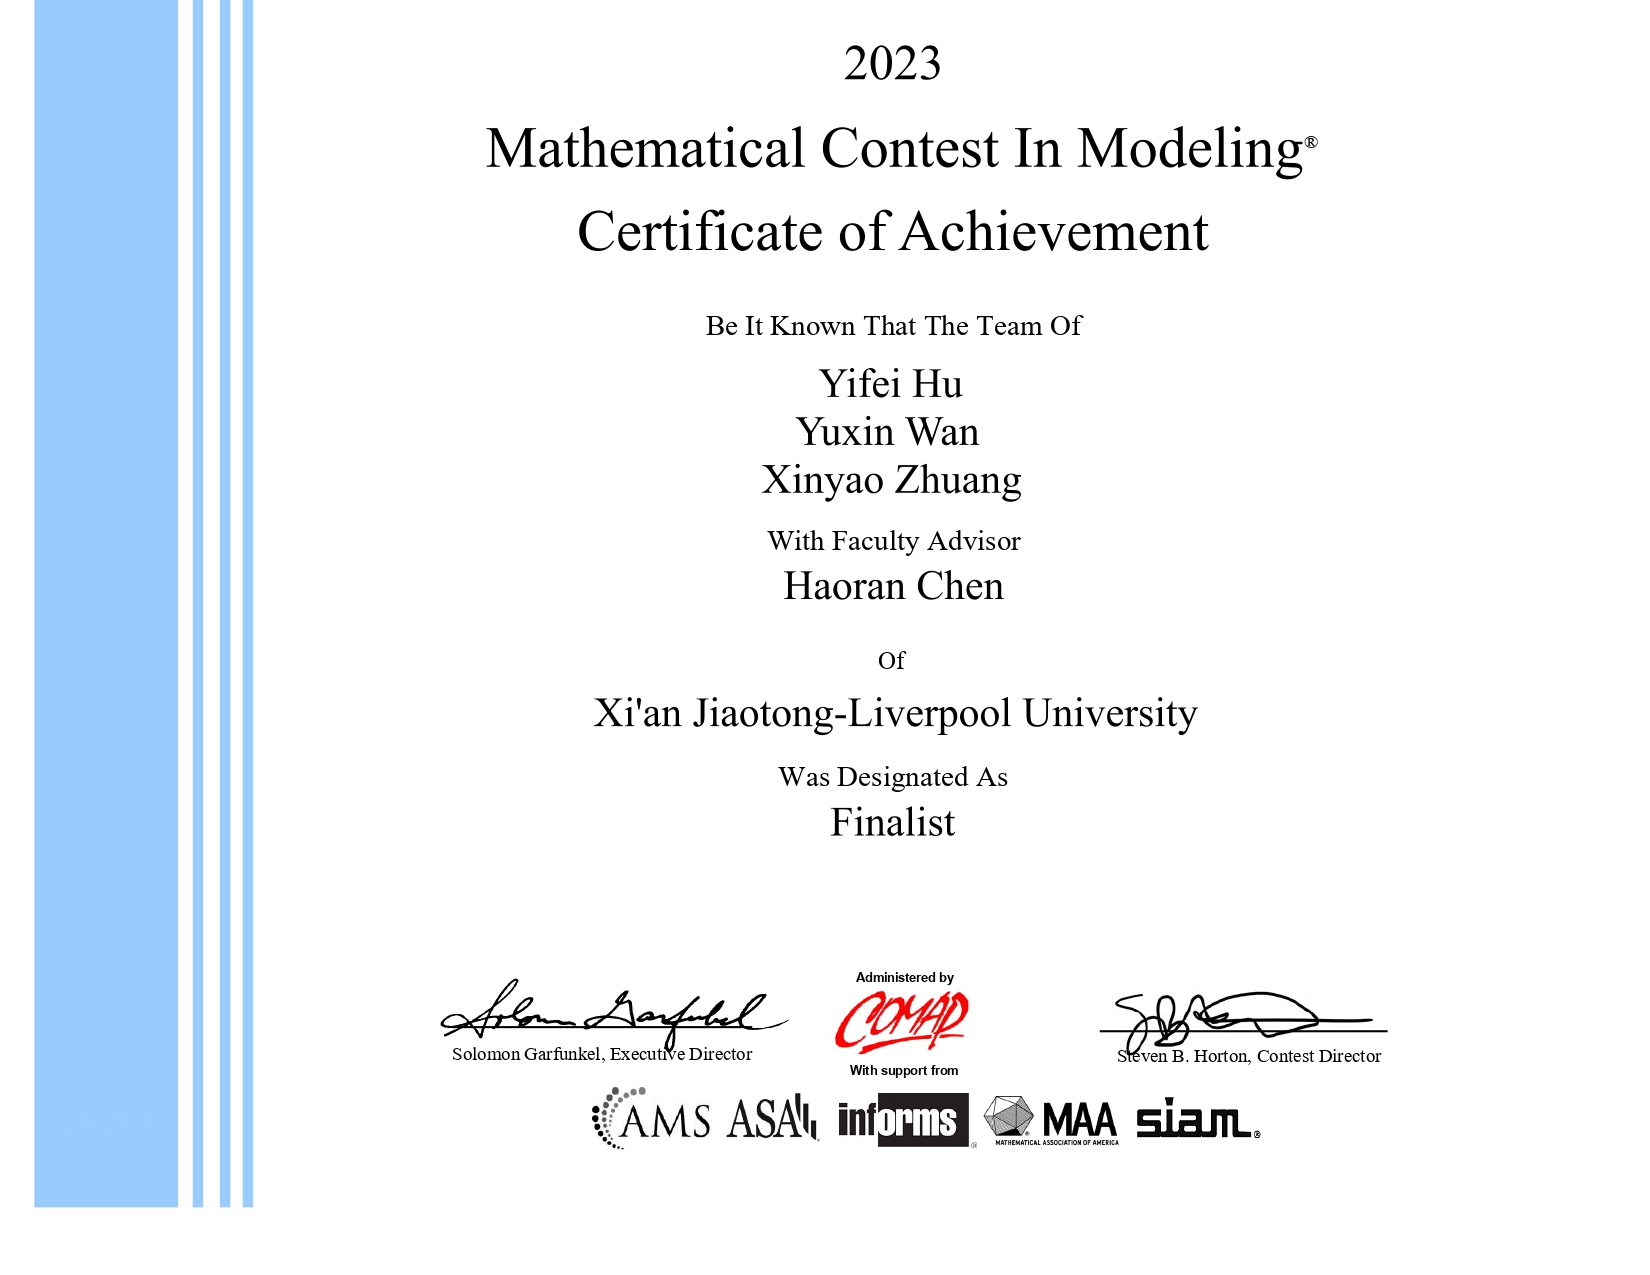 西浦学子获美国大学生数学建模竞赛特等奖提名奖 新学年新课程助力建模学习